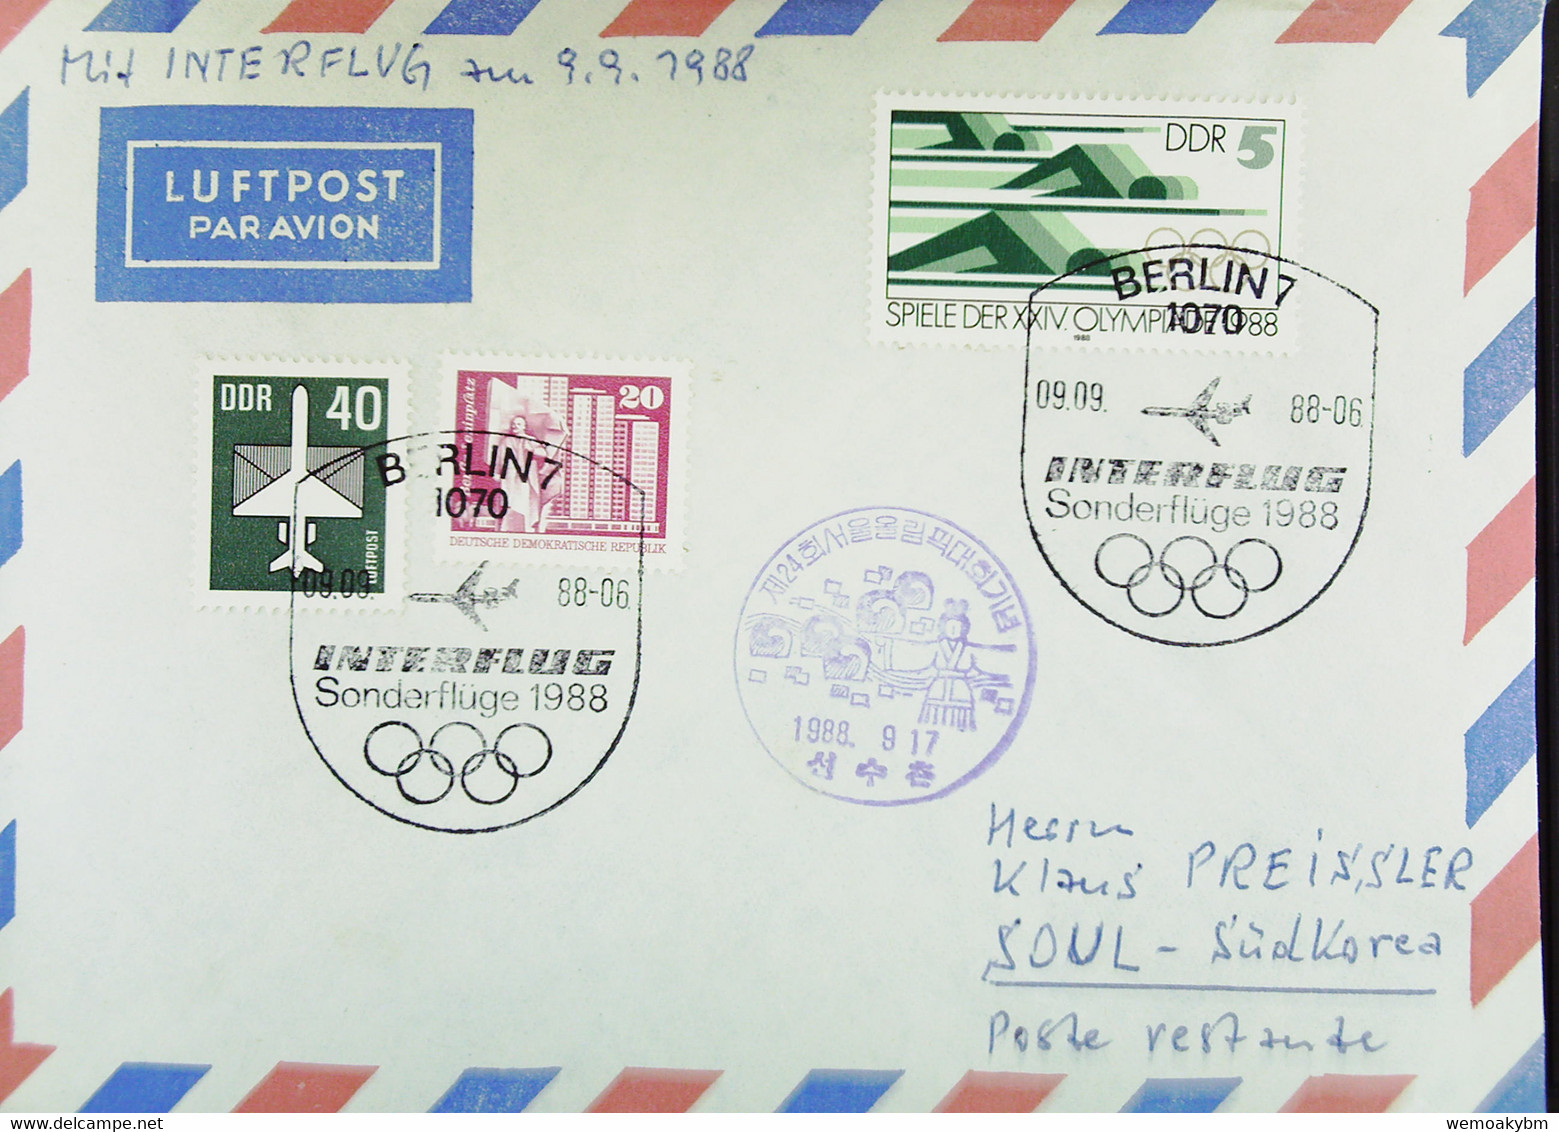 DDR: Luftpost Mit SoSt. "INTERFLUG Sonderflüge 1988 09.09.88" Von Berlin Zur Olympiade Nach Südkorea Mit Ank-Stpl. 17.9. - Airmail